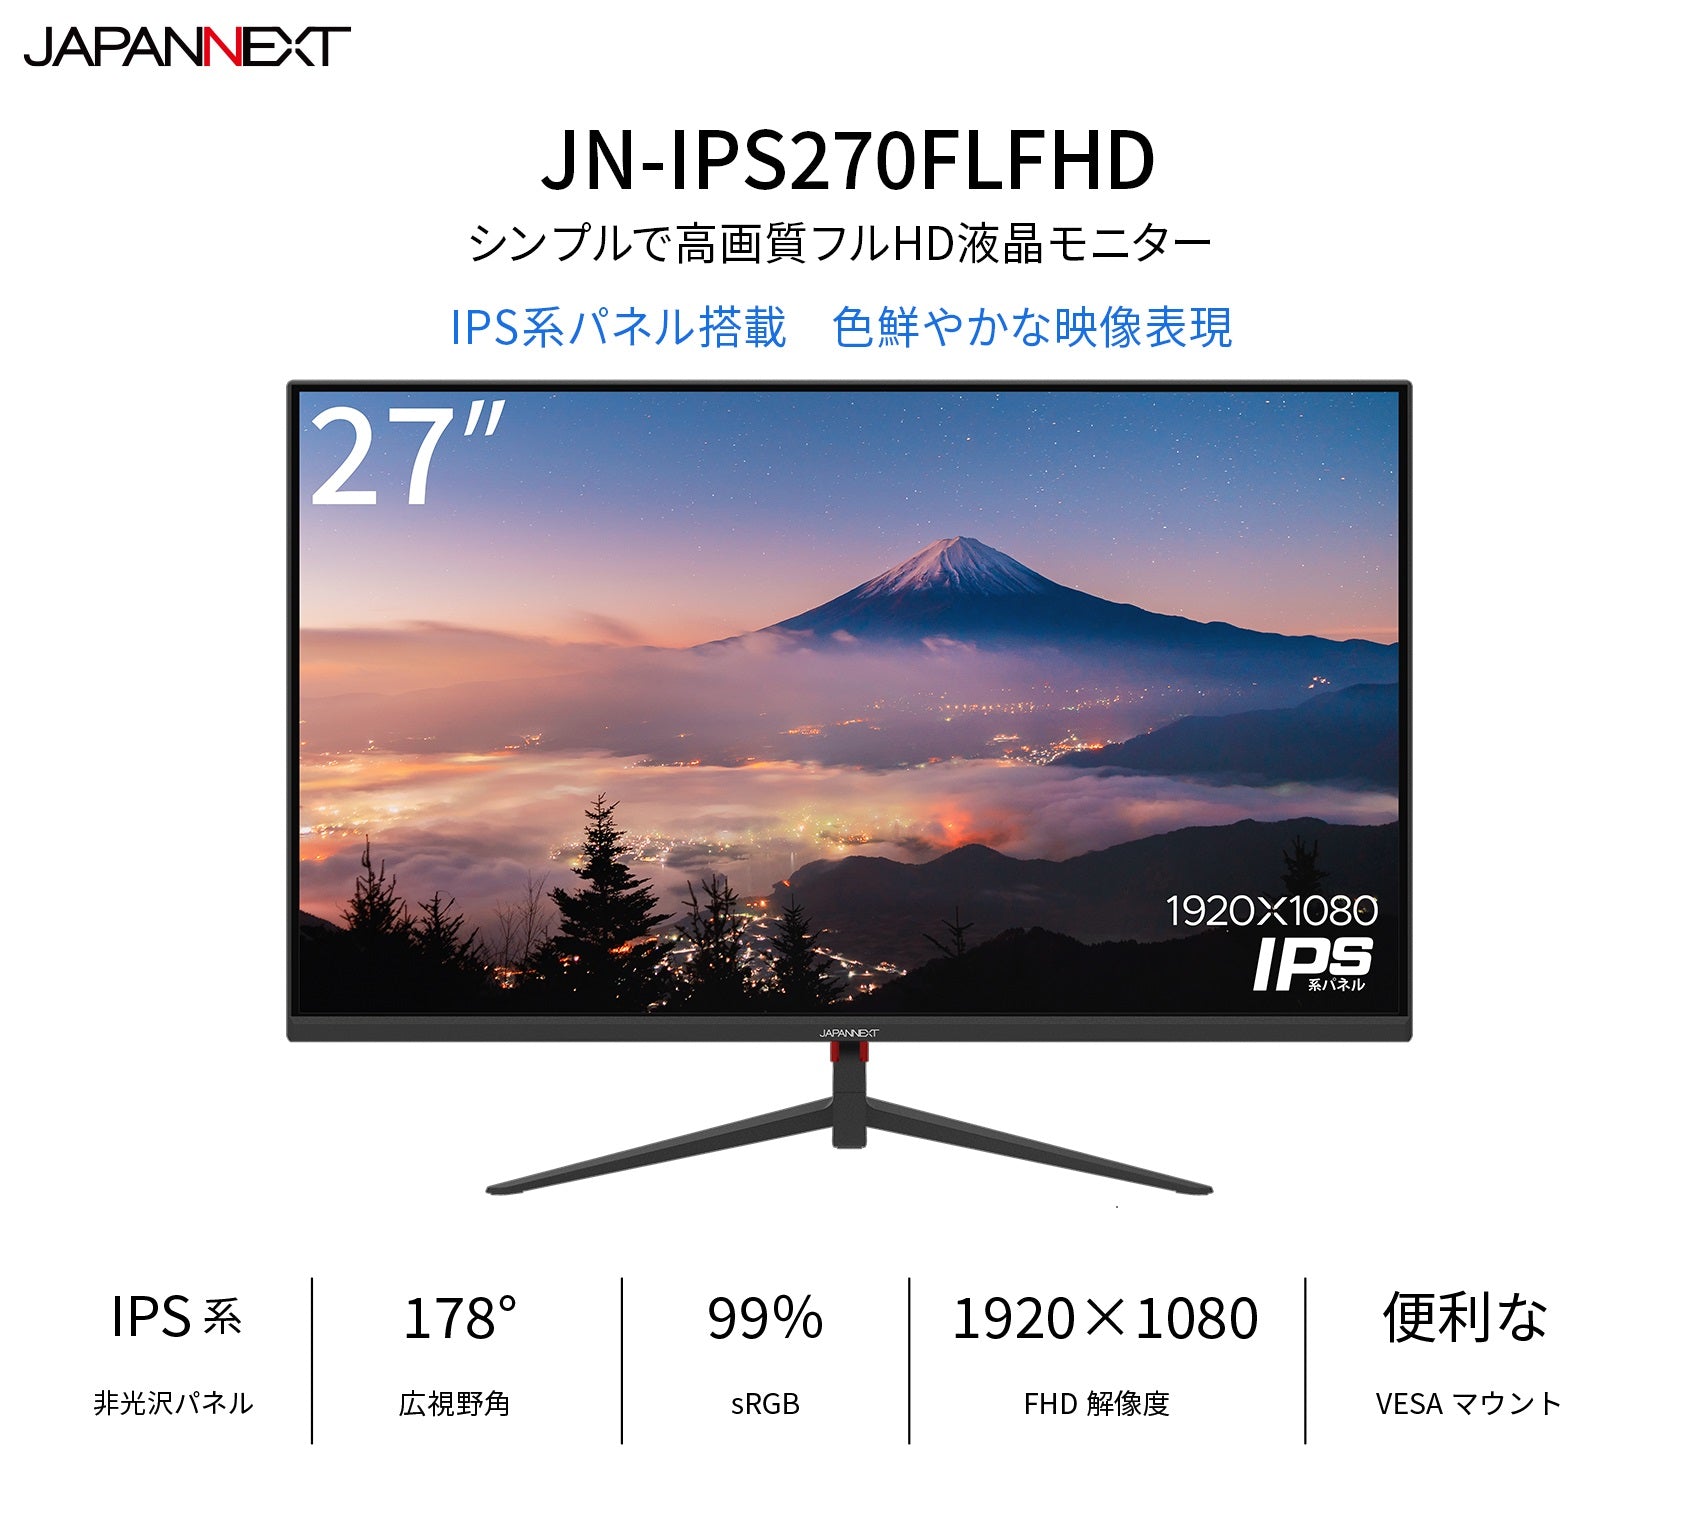 JN-IPS270FLFHD